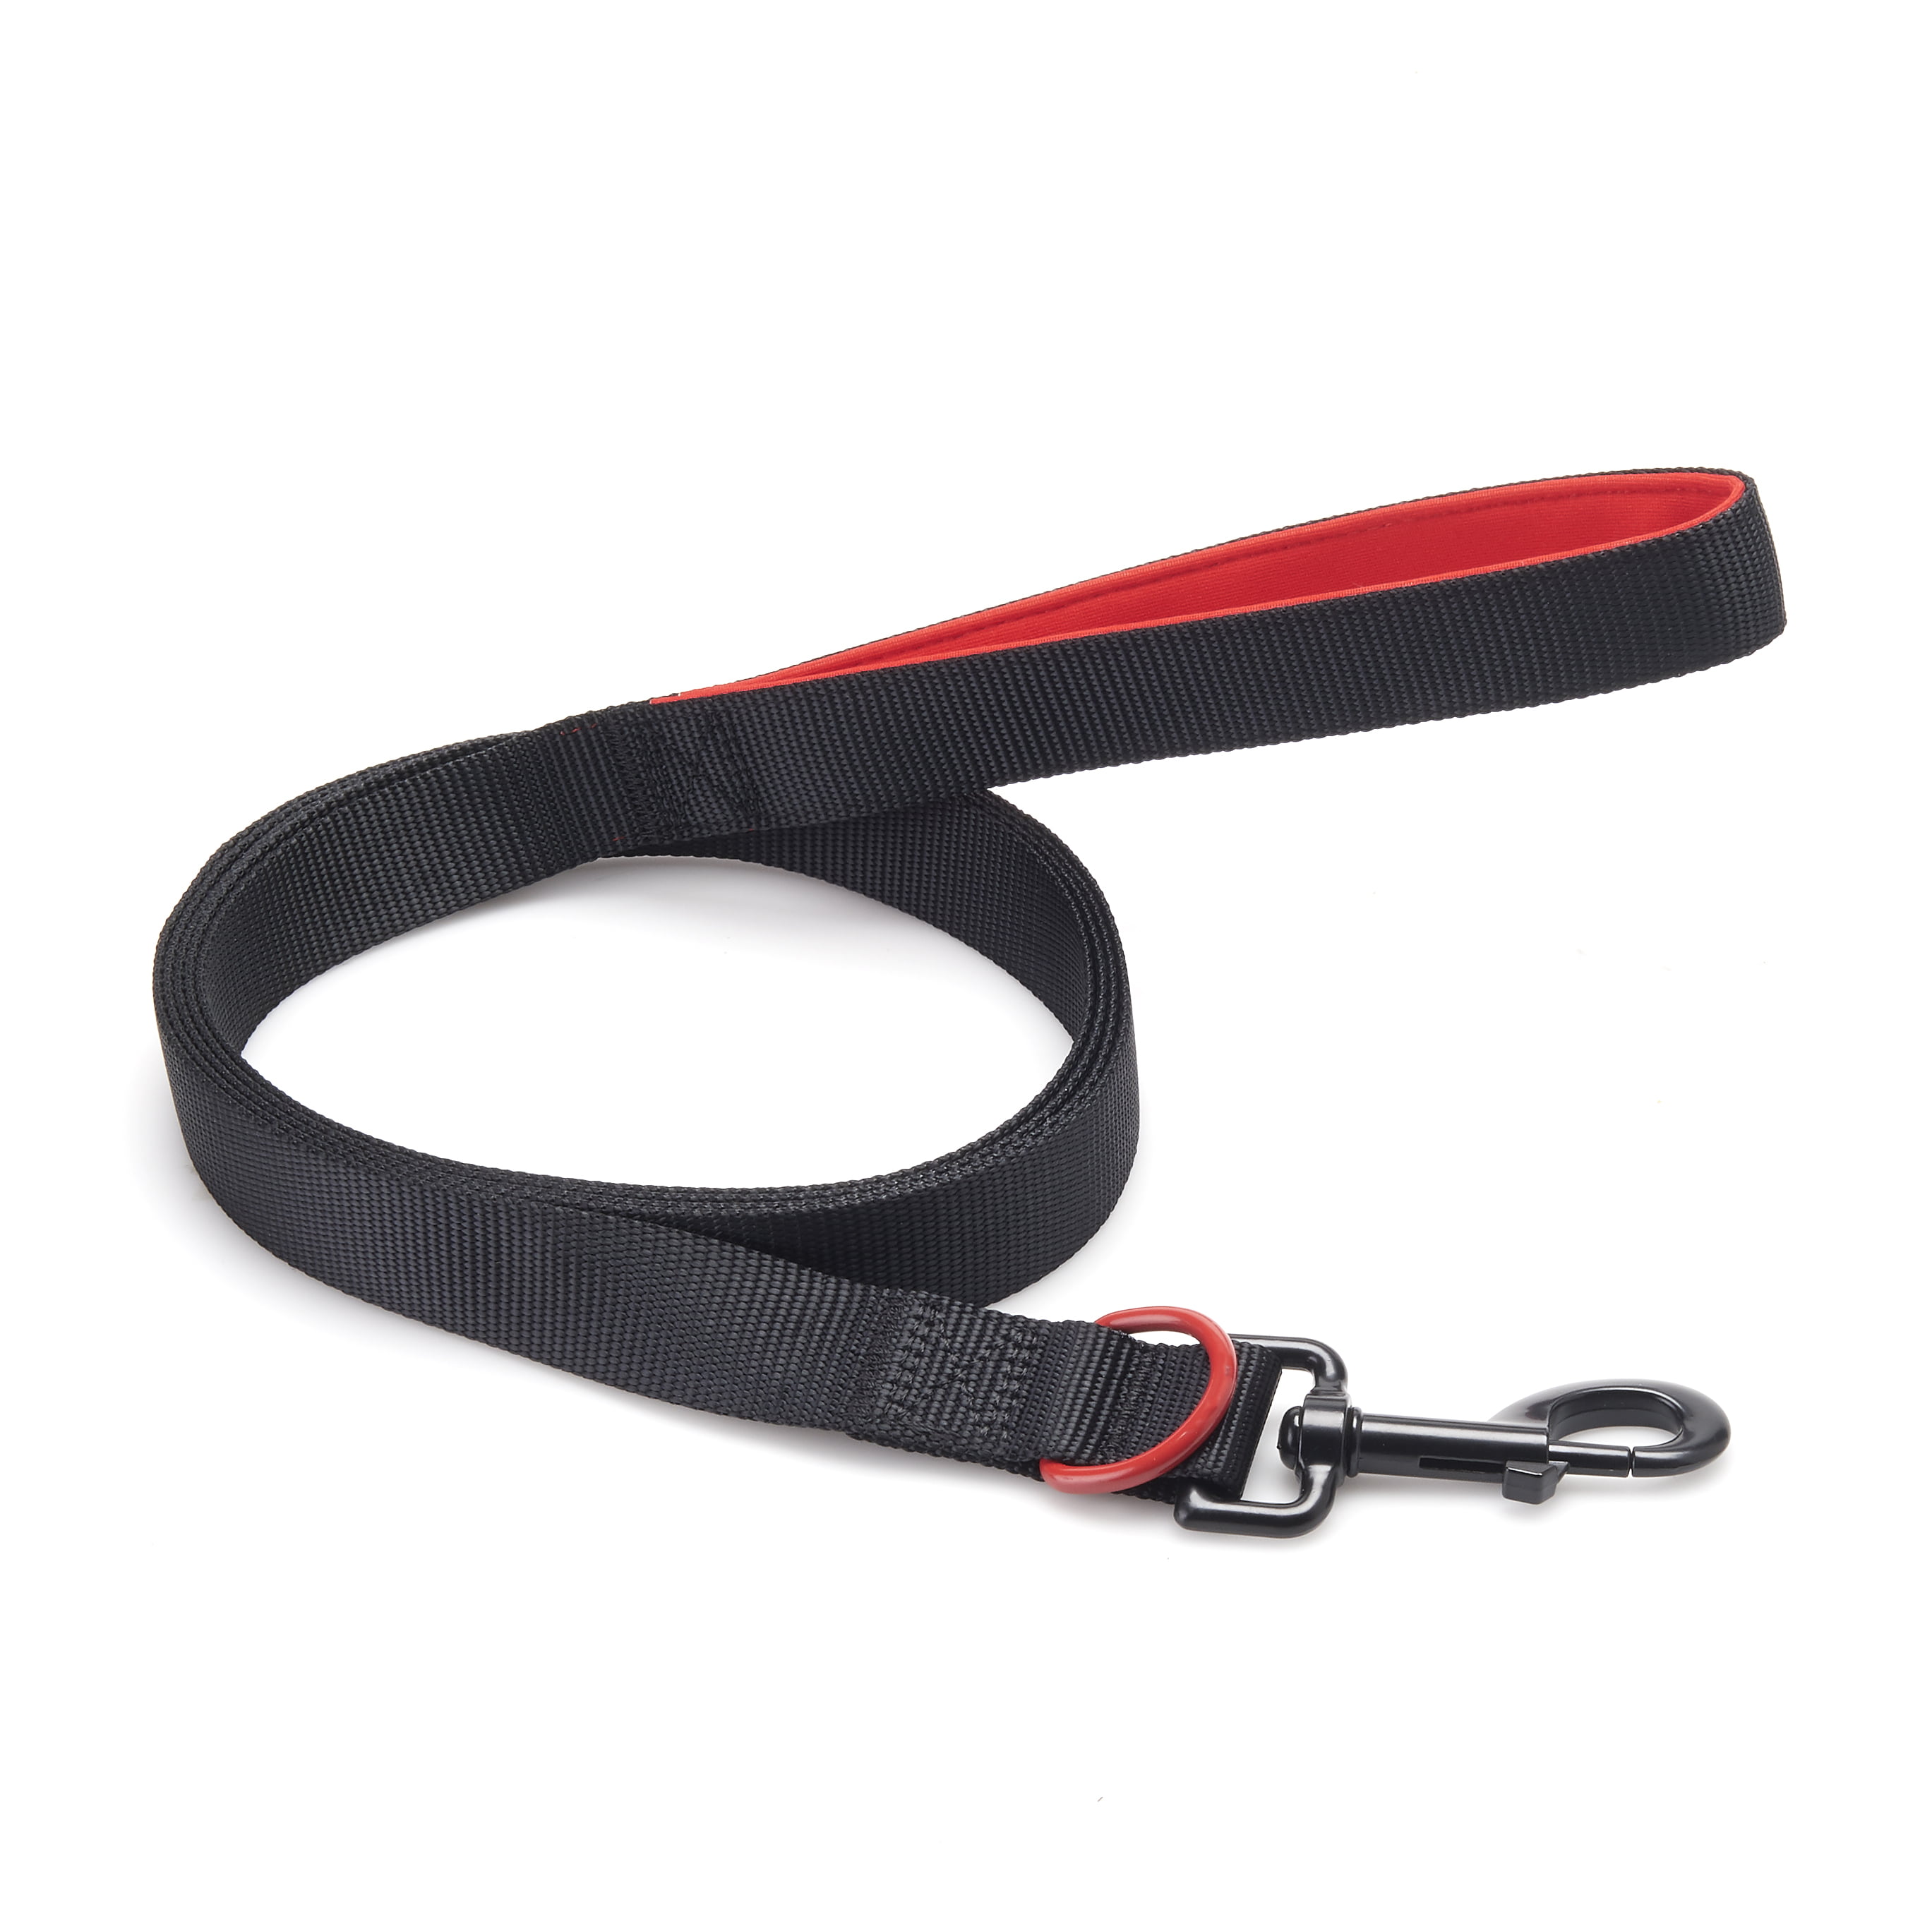 black leash for dog